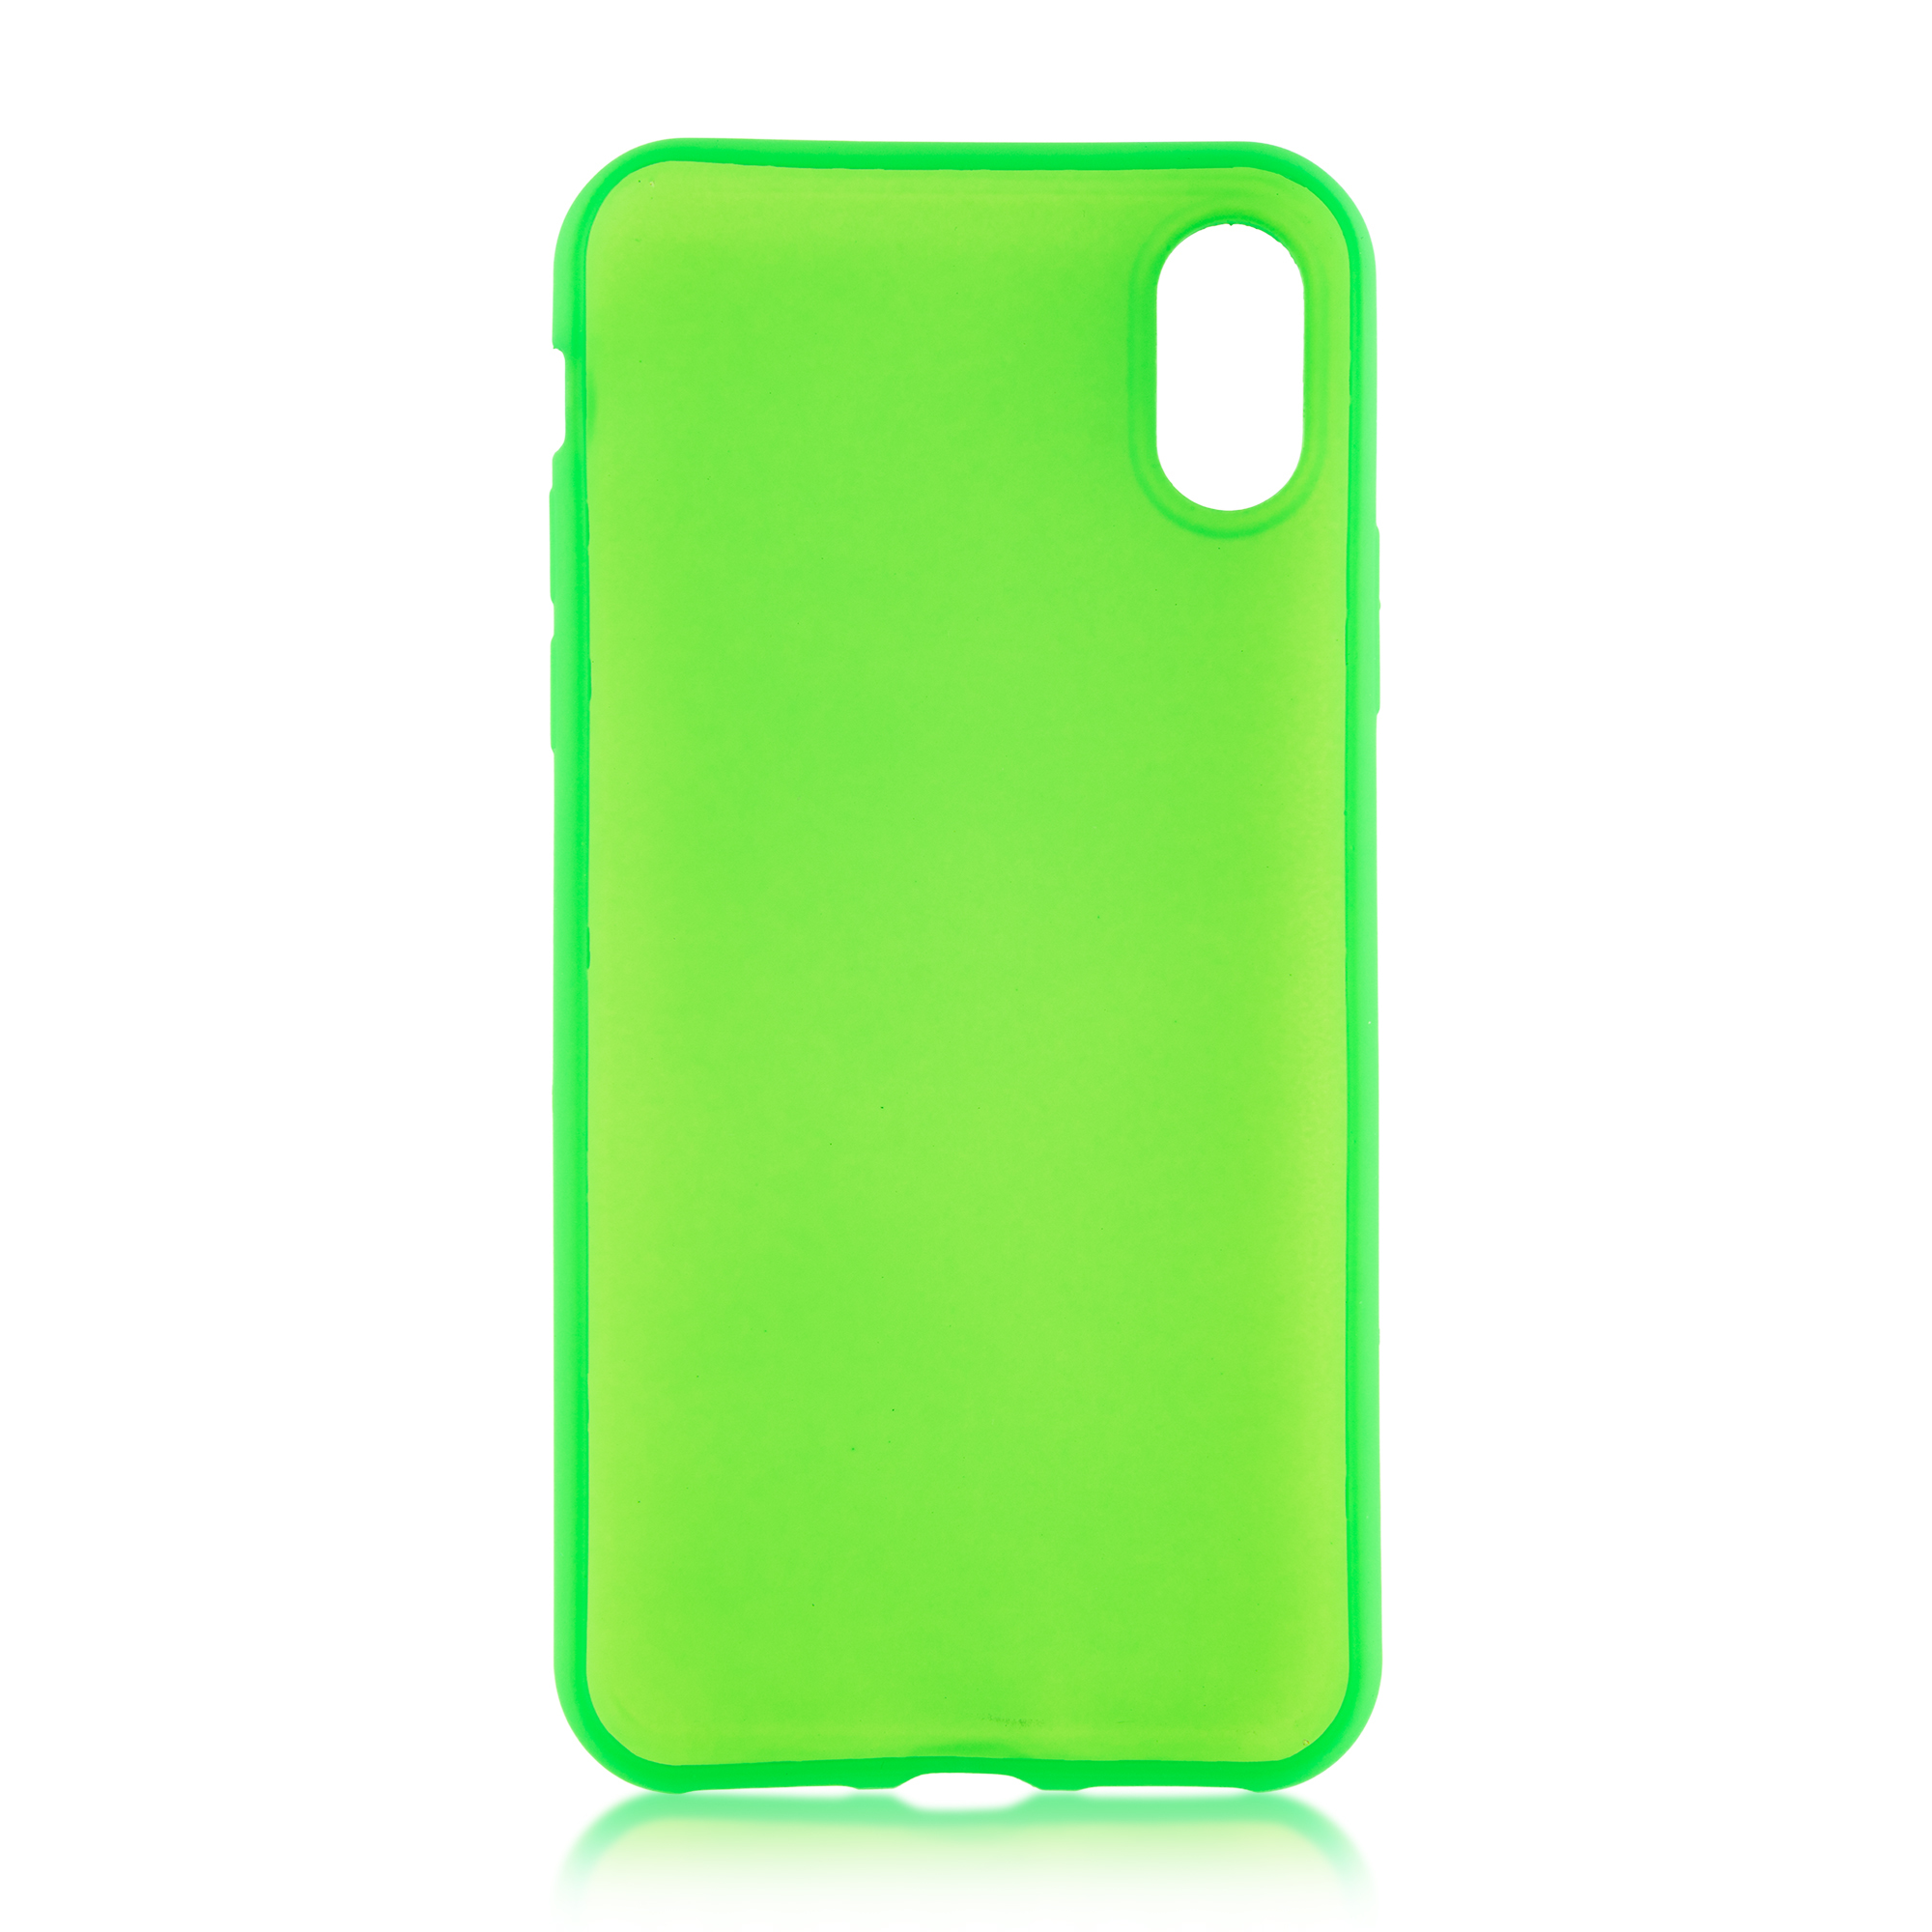 Зеленый чехол для телефона. Чехол Realme Note 50 кислотно зеленый. Iphone 10 зеленый. Чехол iphone x зеленый. Зеленый чехол на айфон.